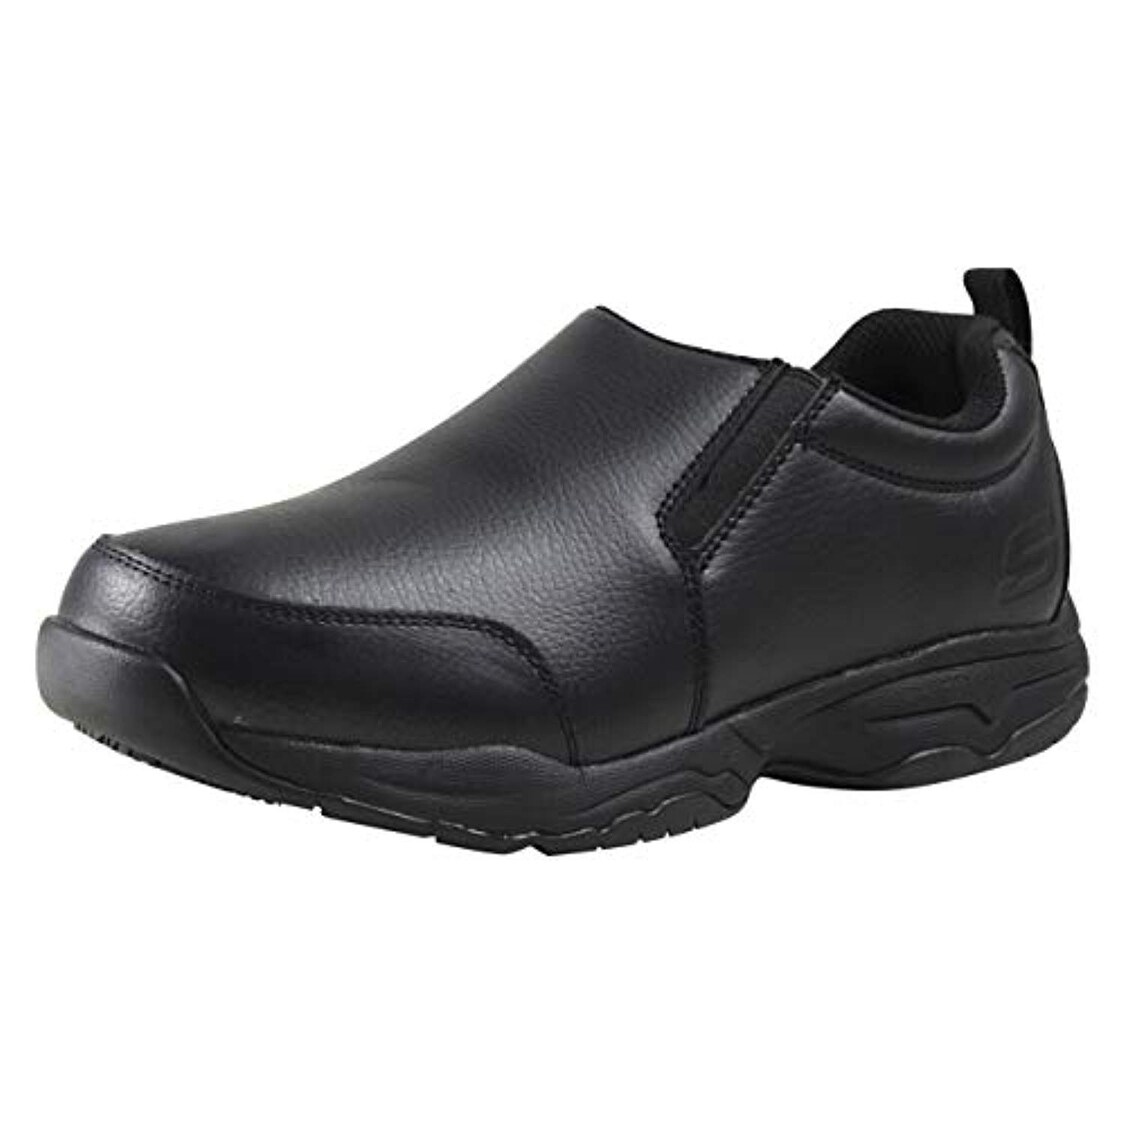 skechers black leather sneakers